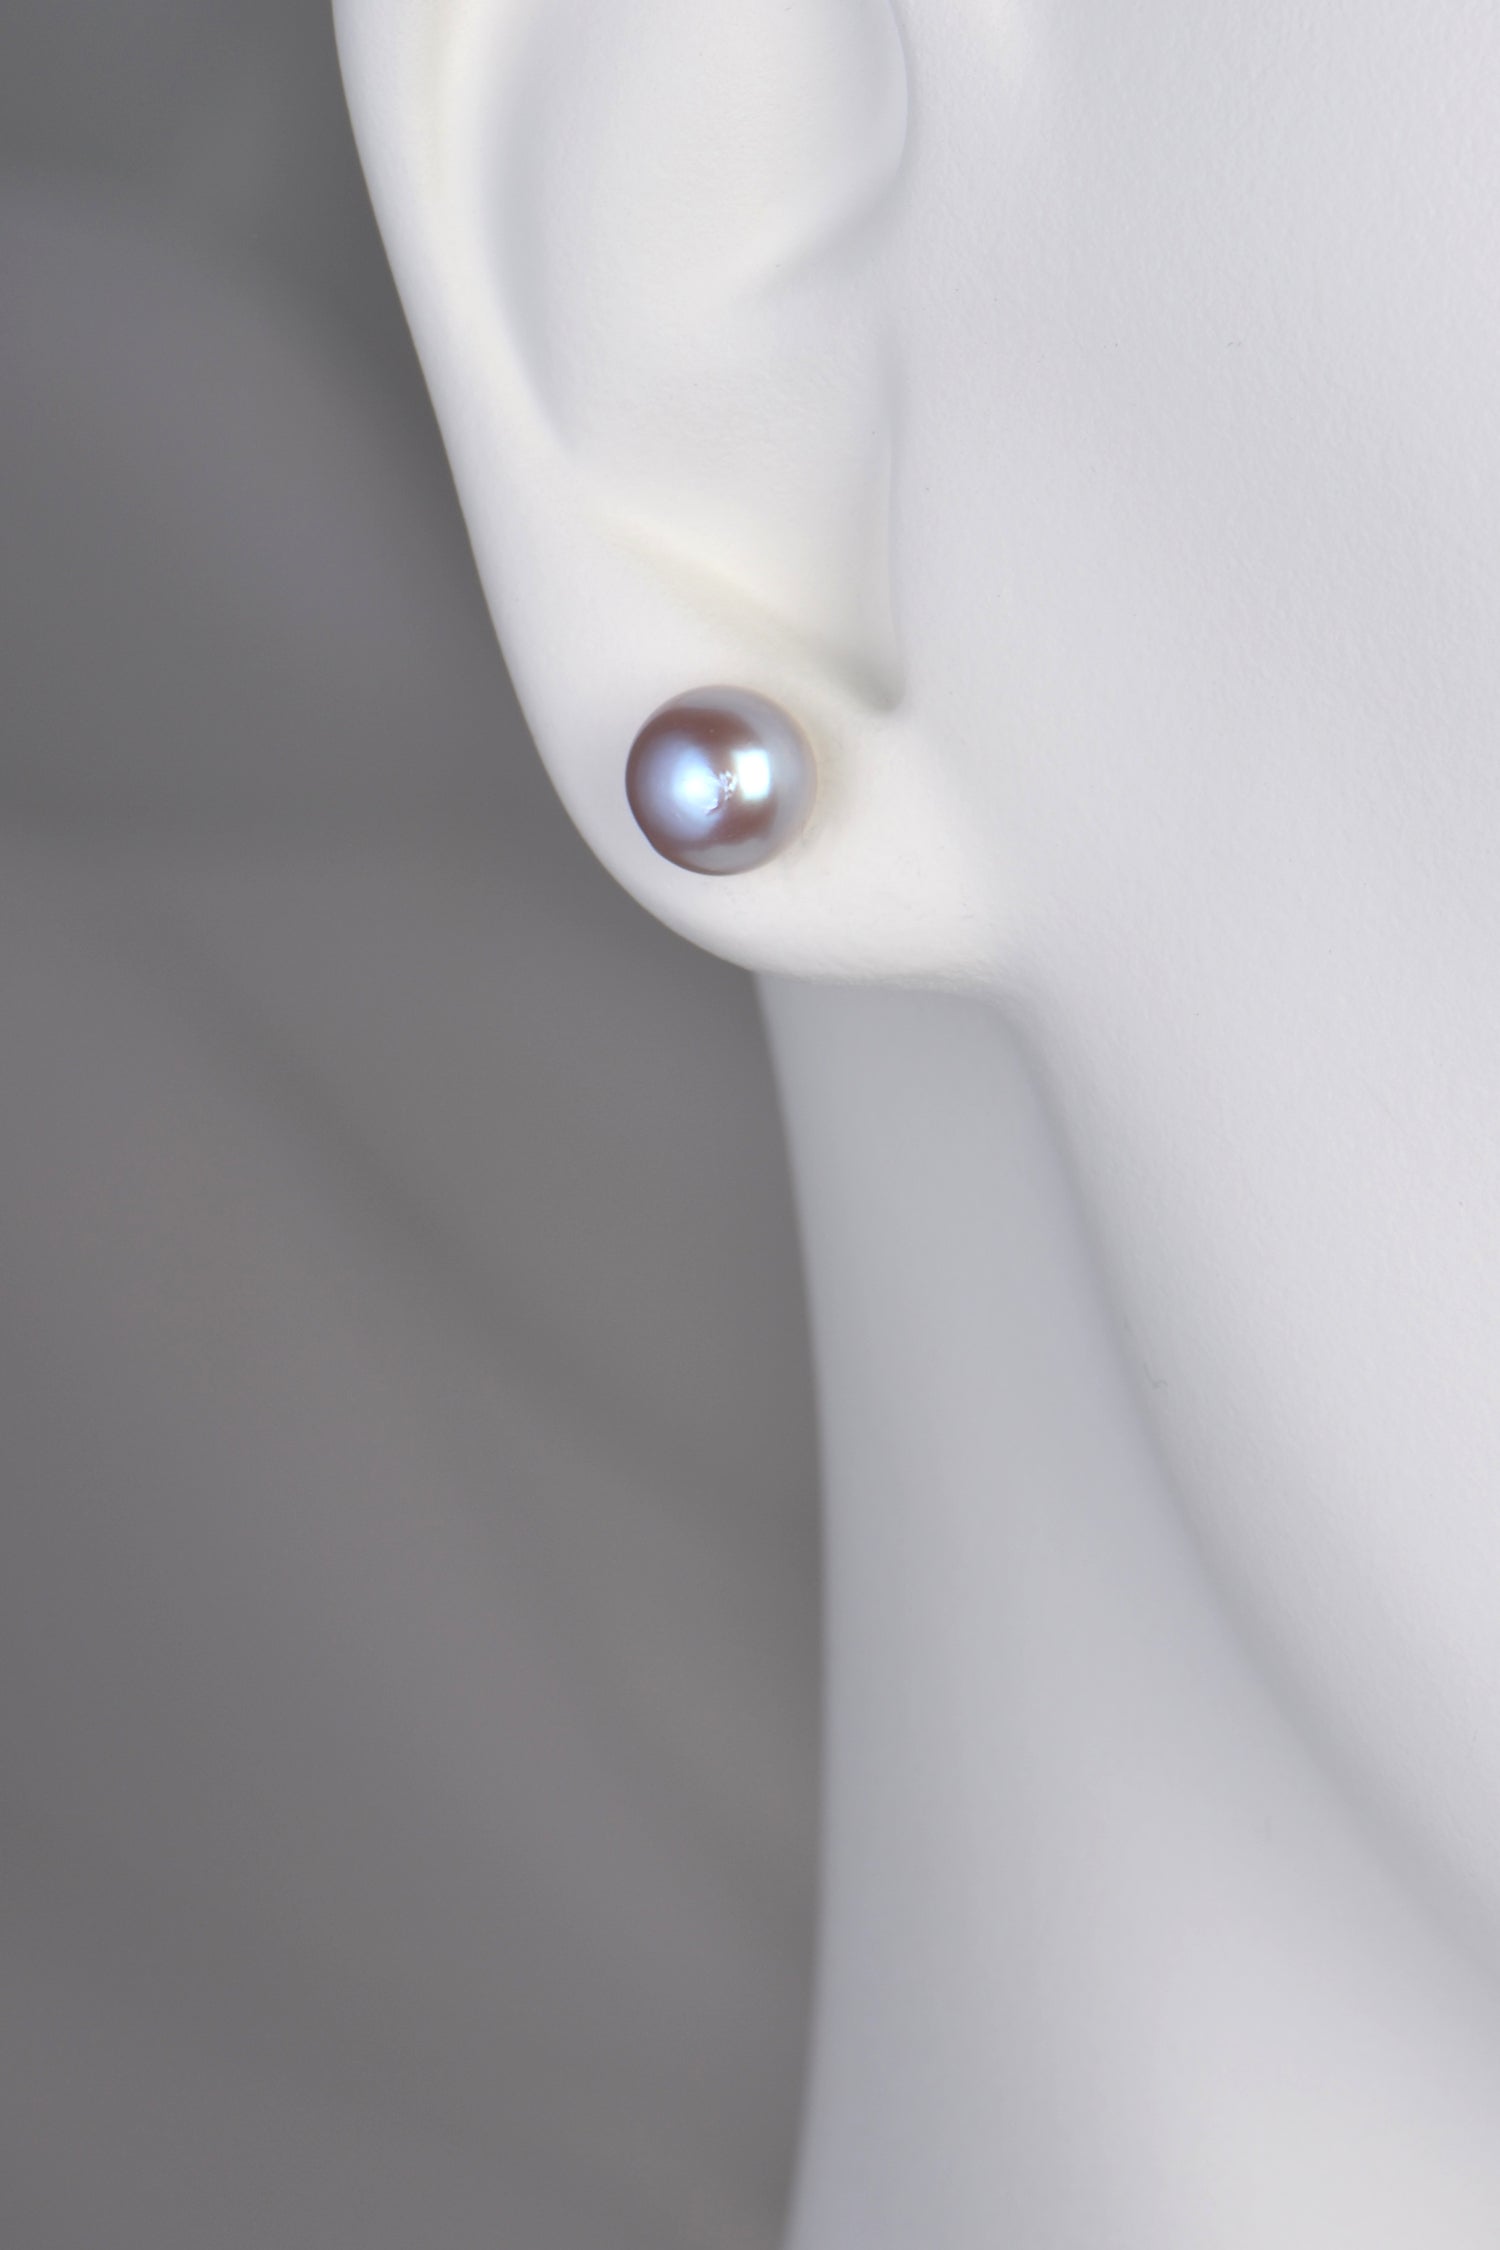 8mm round grey pearl earrings